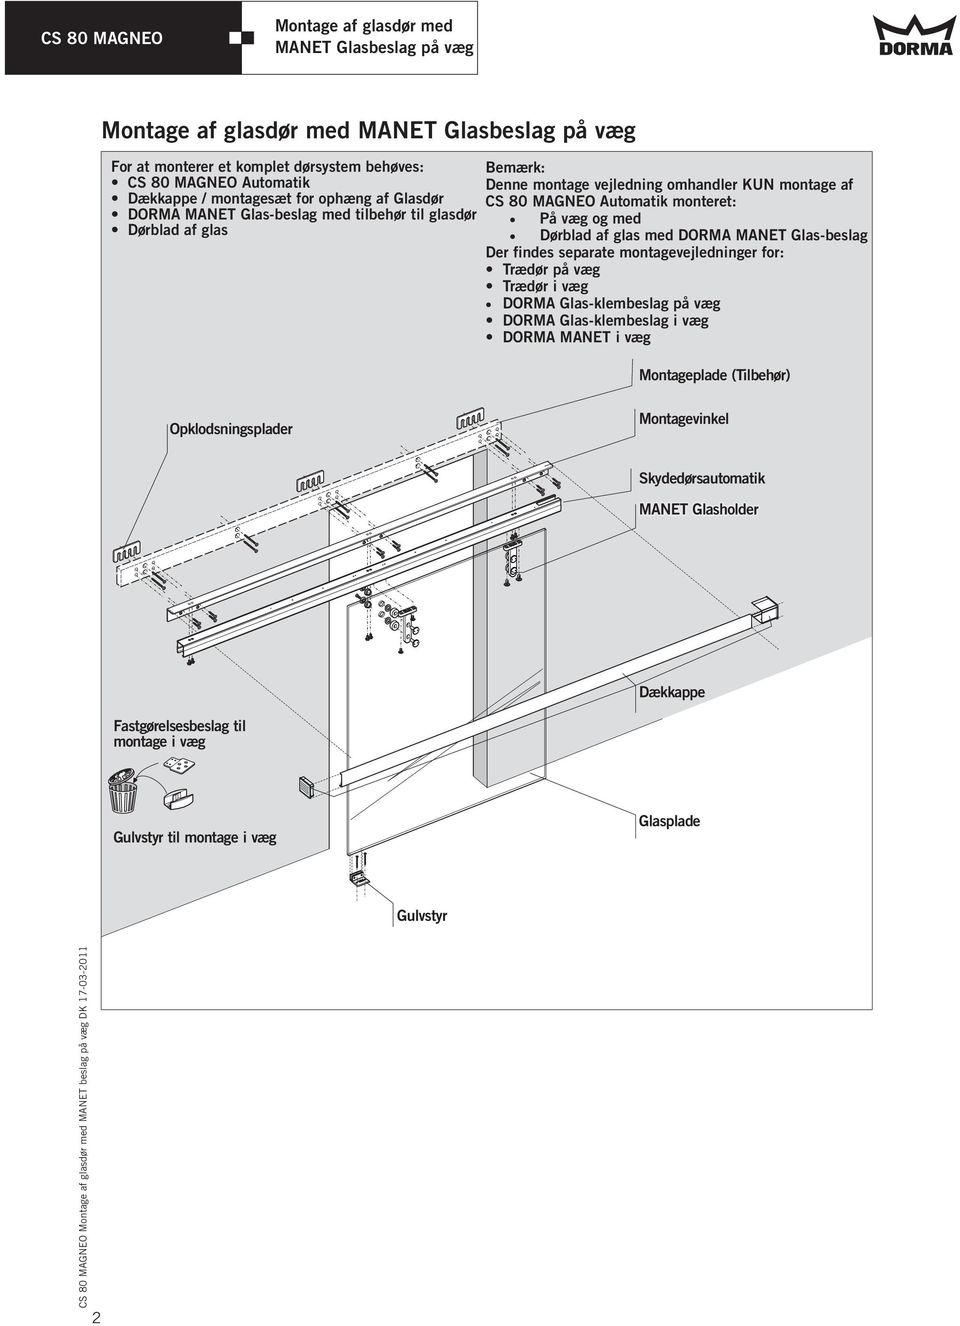 Der findes separate montagevejledninger for: Trædør på væg Trædør i væg DORMA Glas-klembeslag på væg DORMA Glas-klembeslag i væg DORMA MANET i væg Montageplade (Tilbehør)